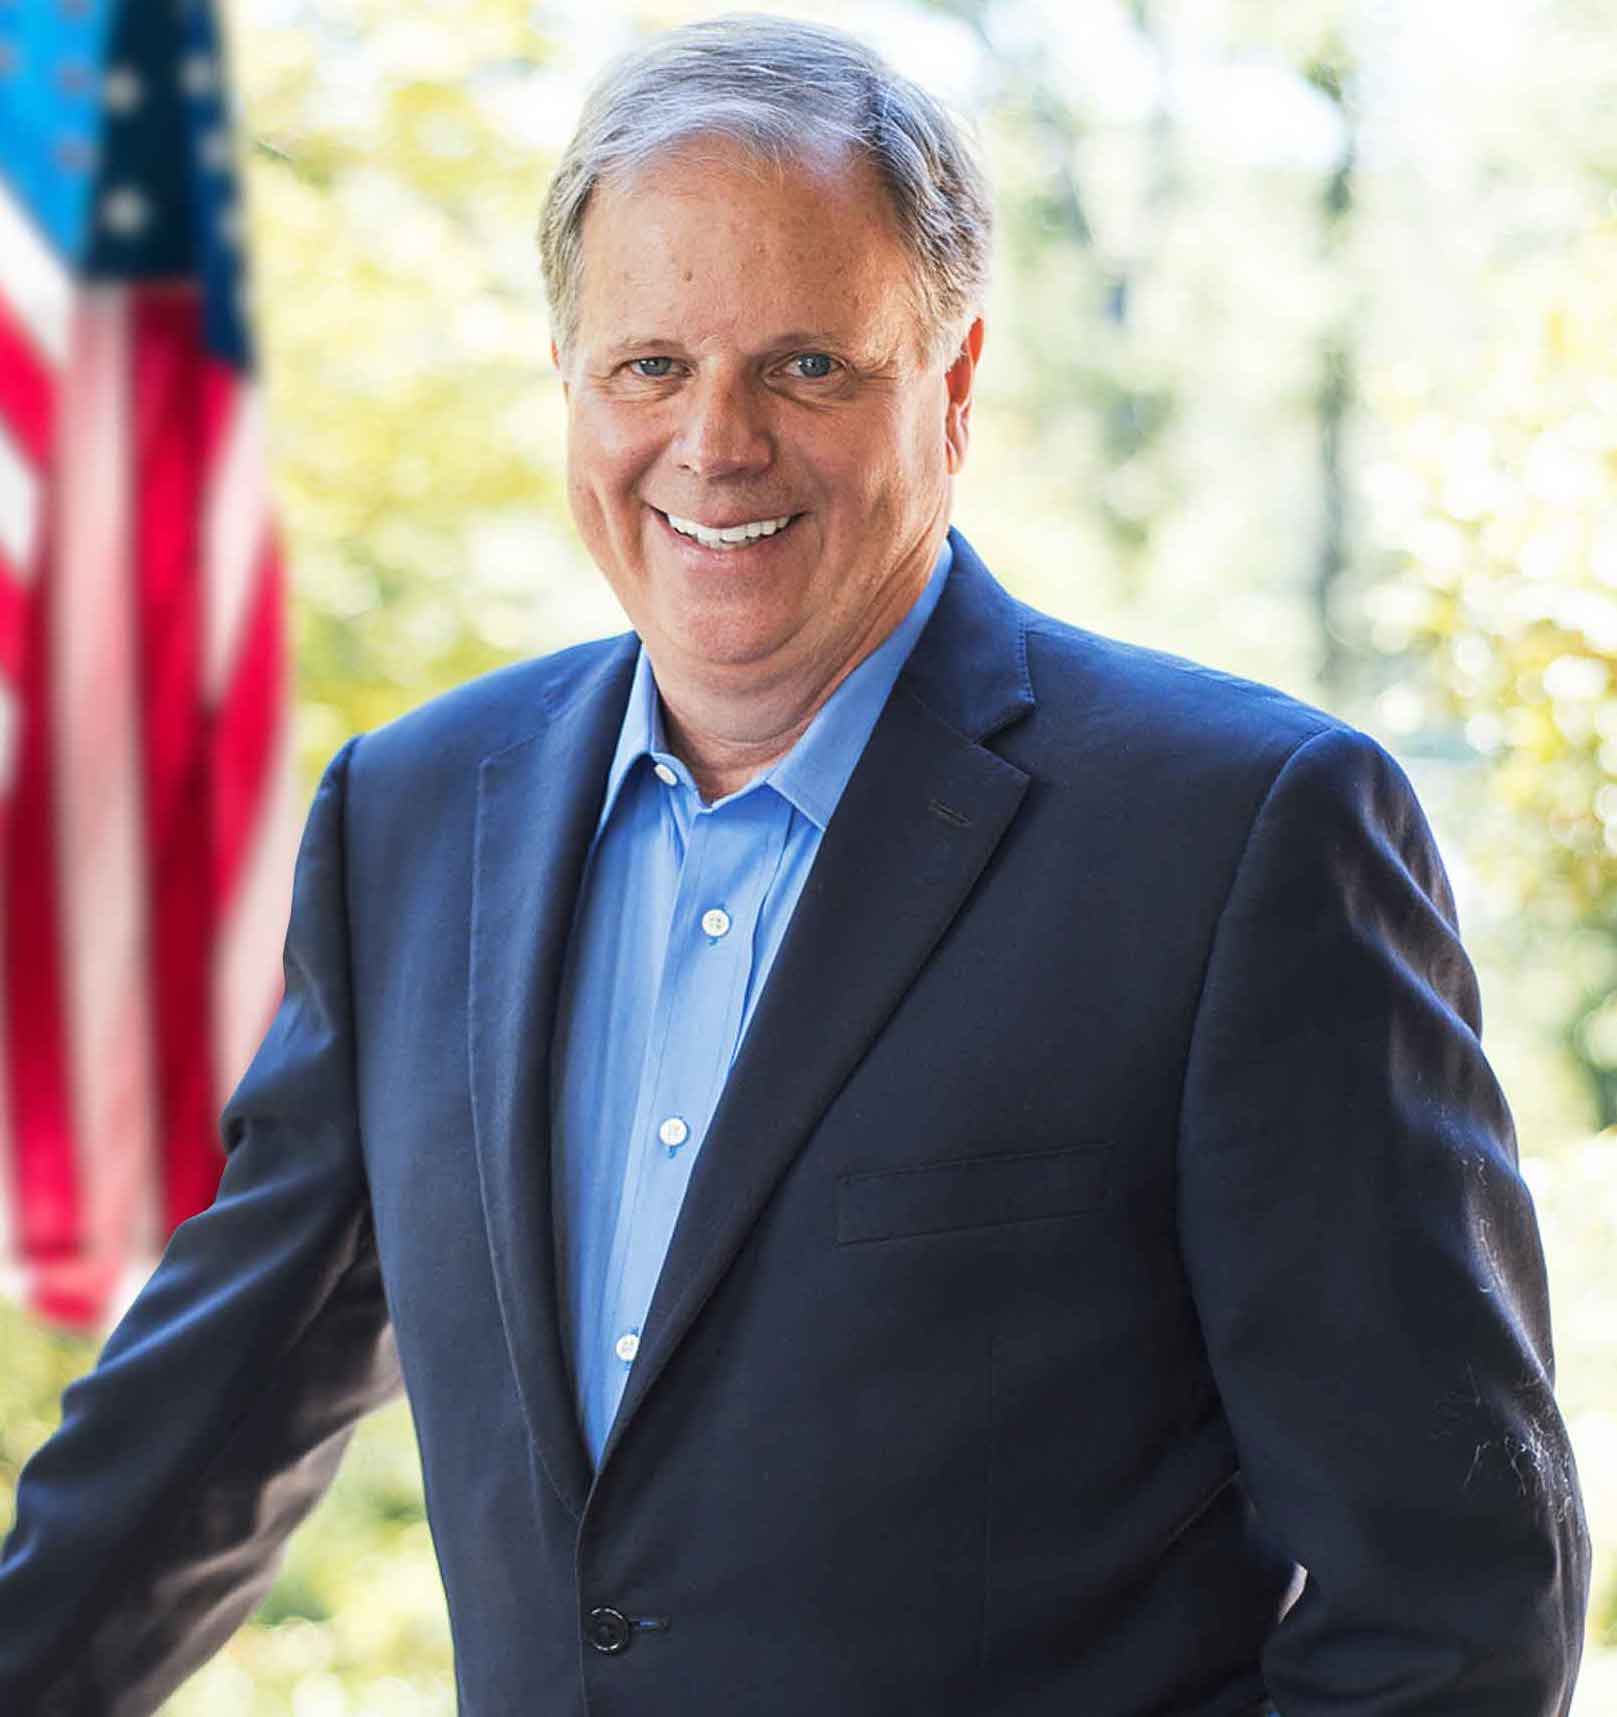 Senator-elect Doug Jones of Alabama